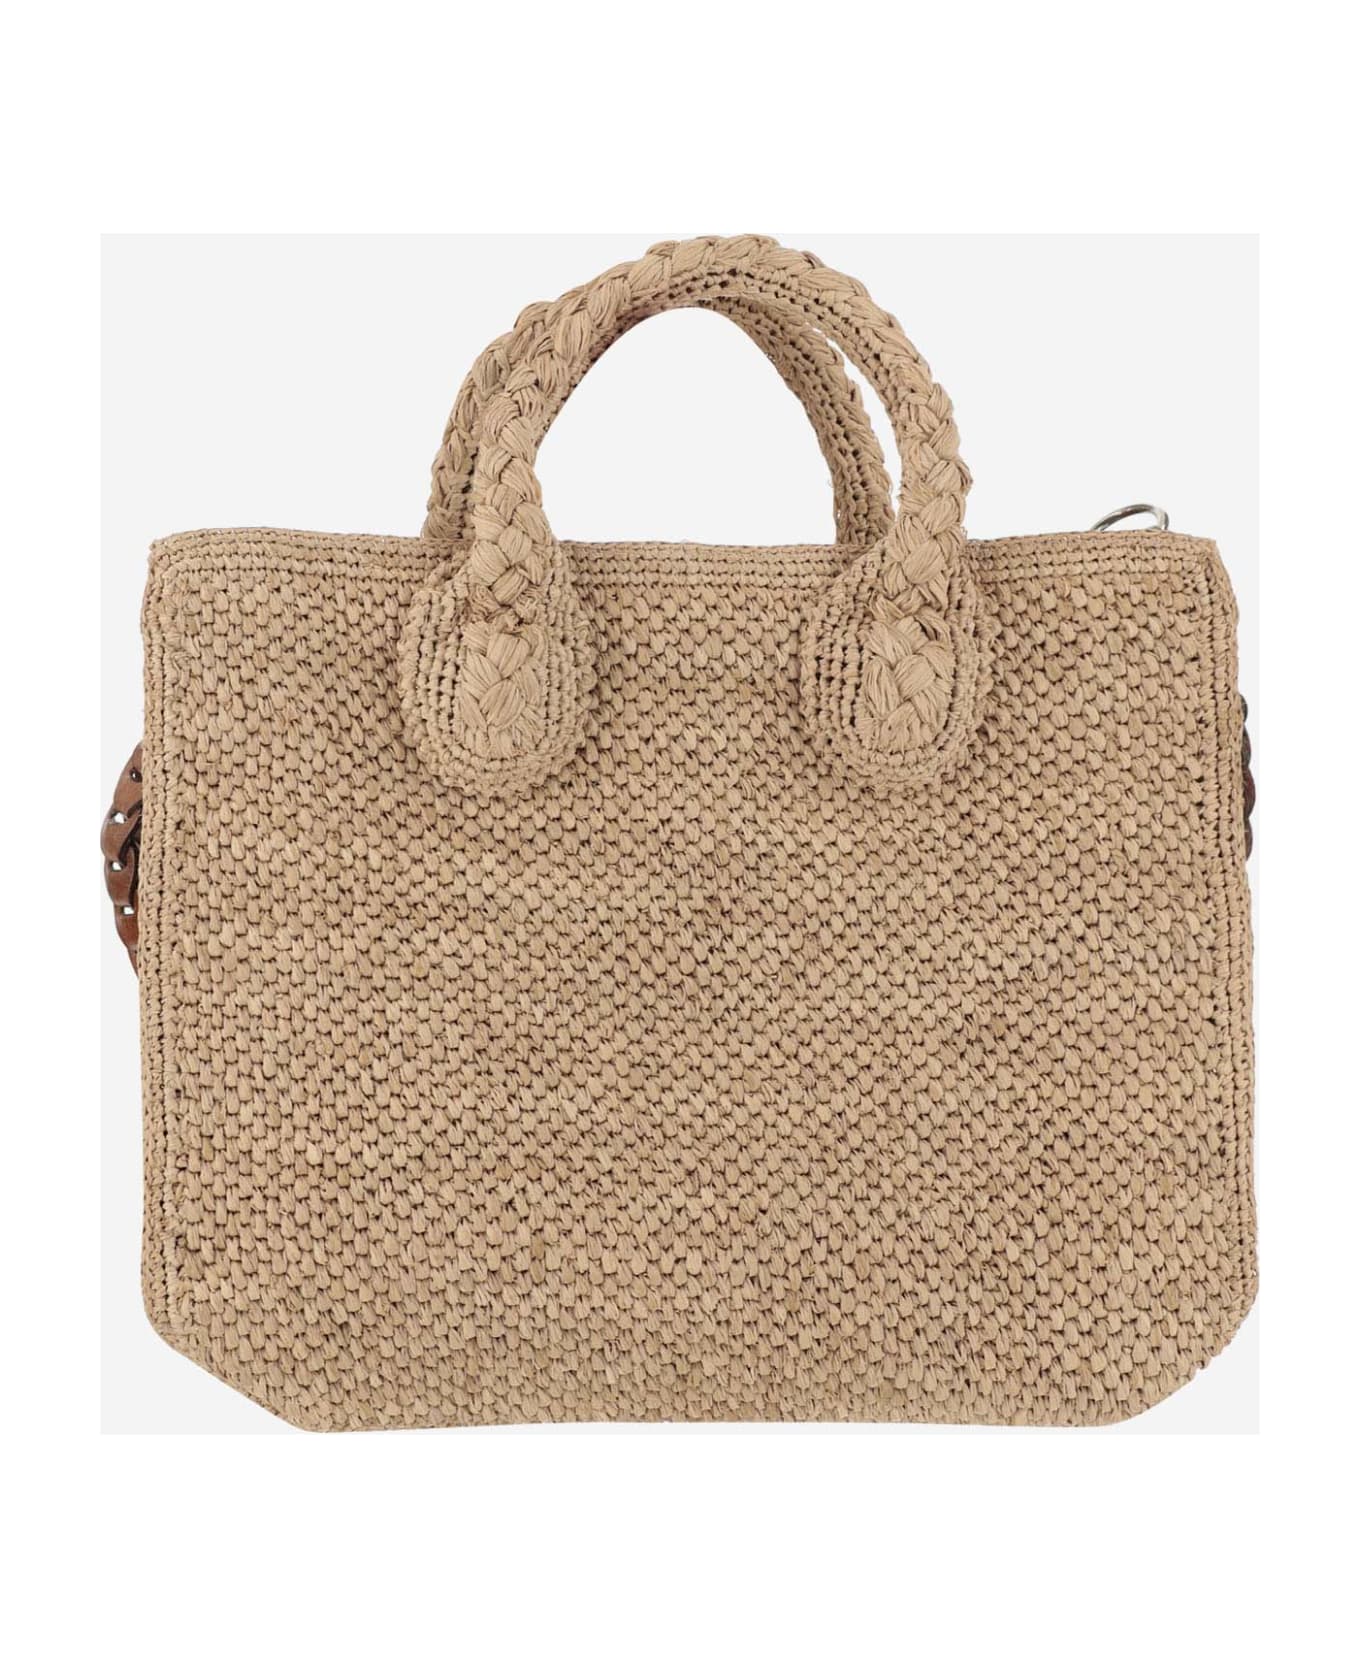 Ibeliv Raffia Bag With Leather Details - TEA